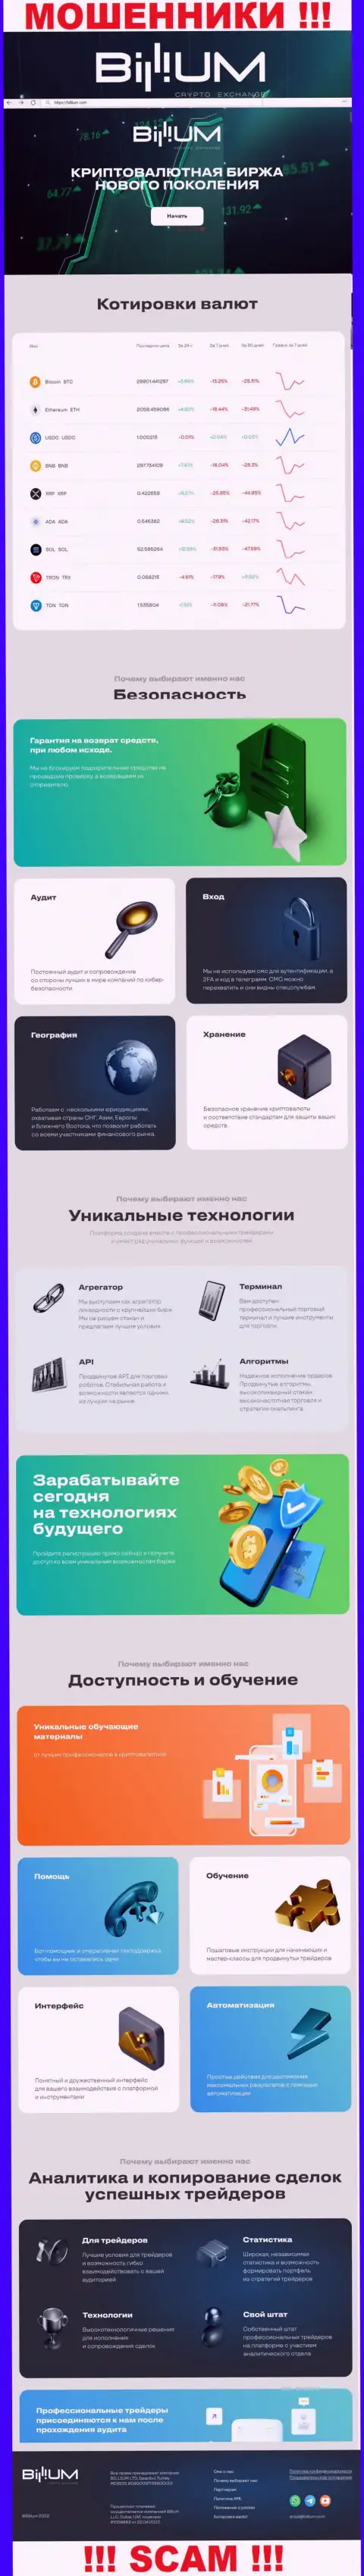 Информация о официальном web-портале мошенников Billium